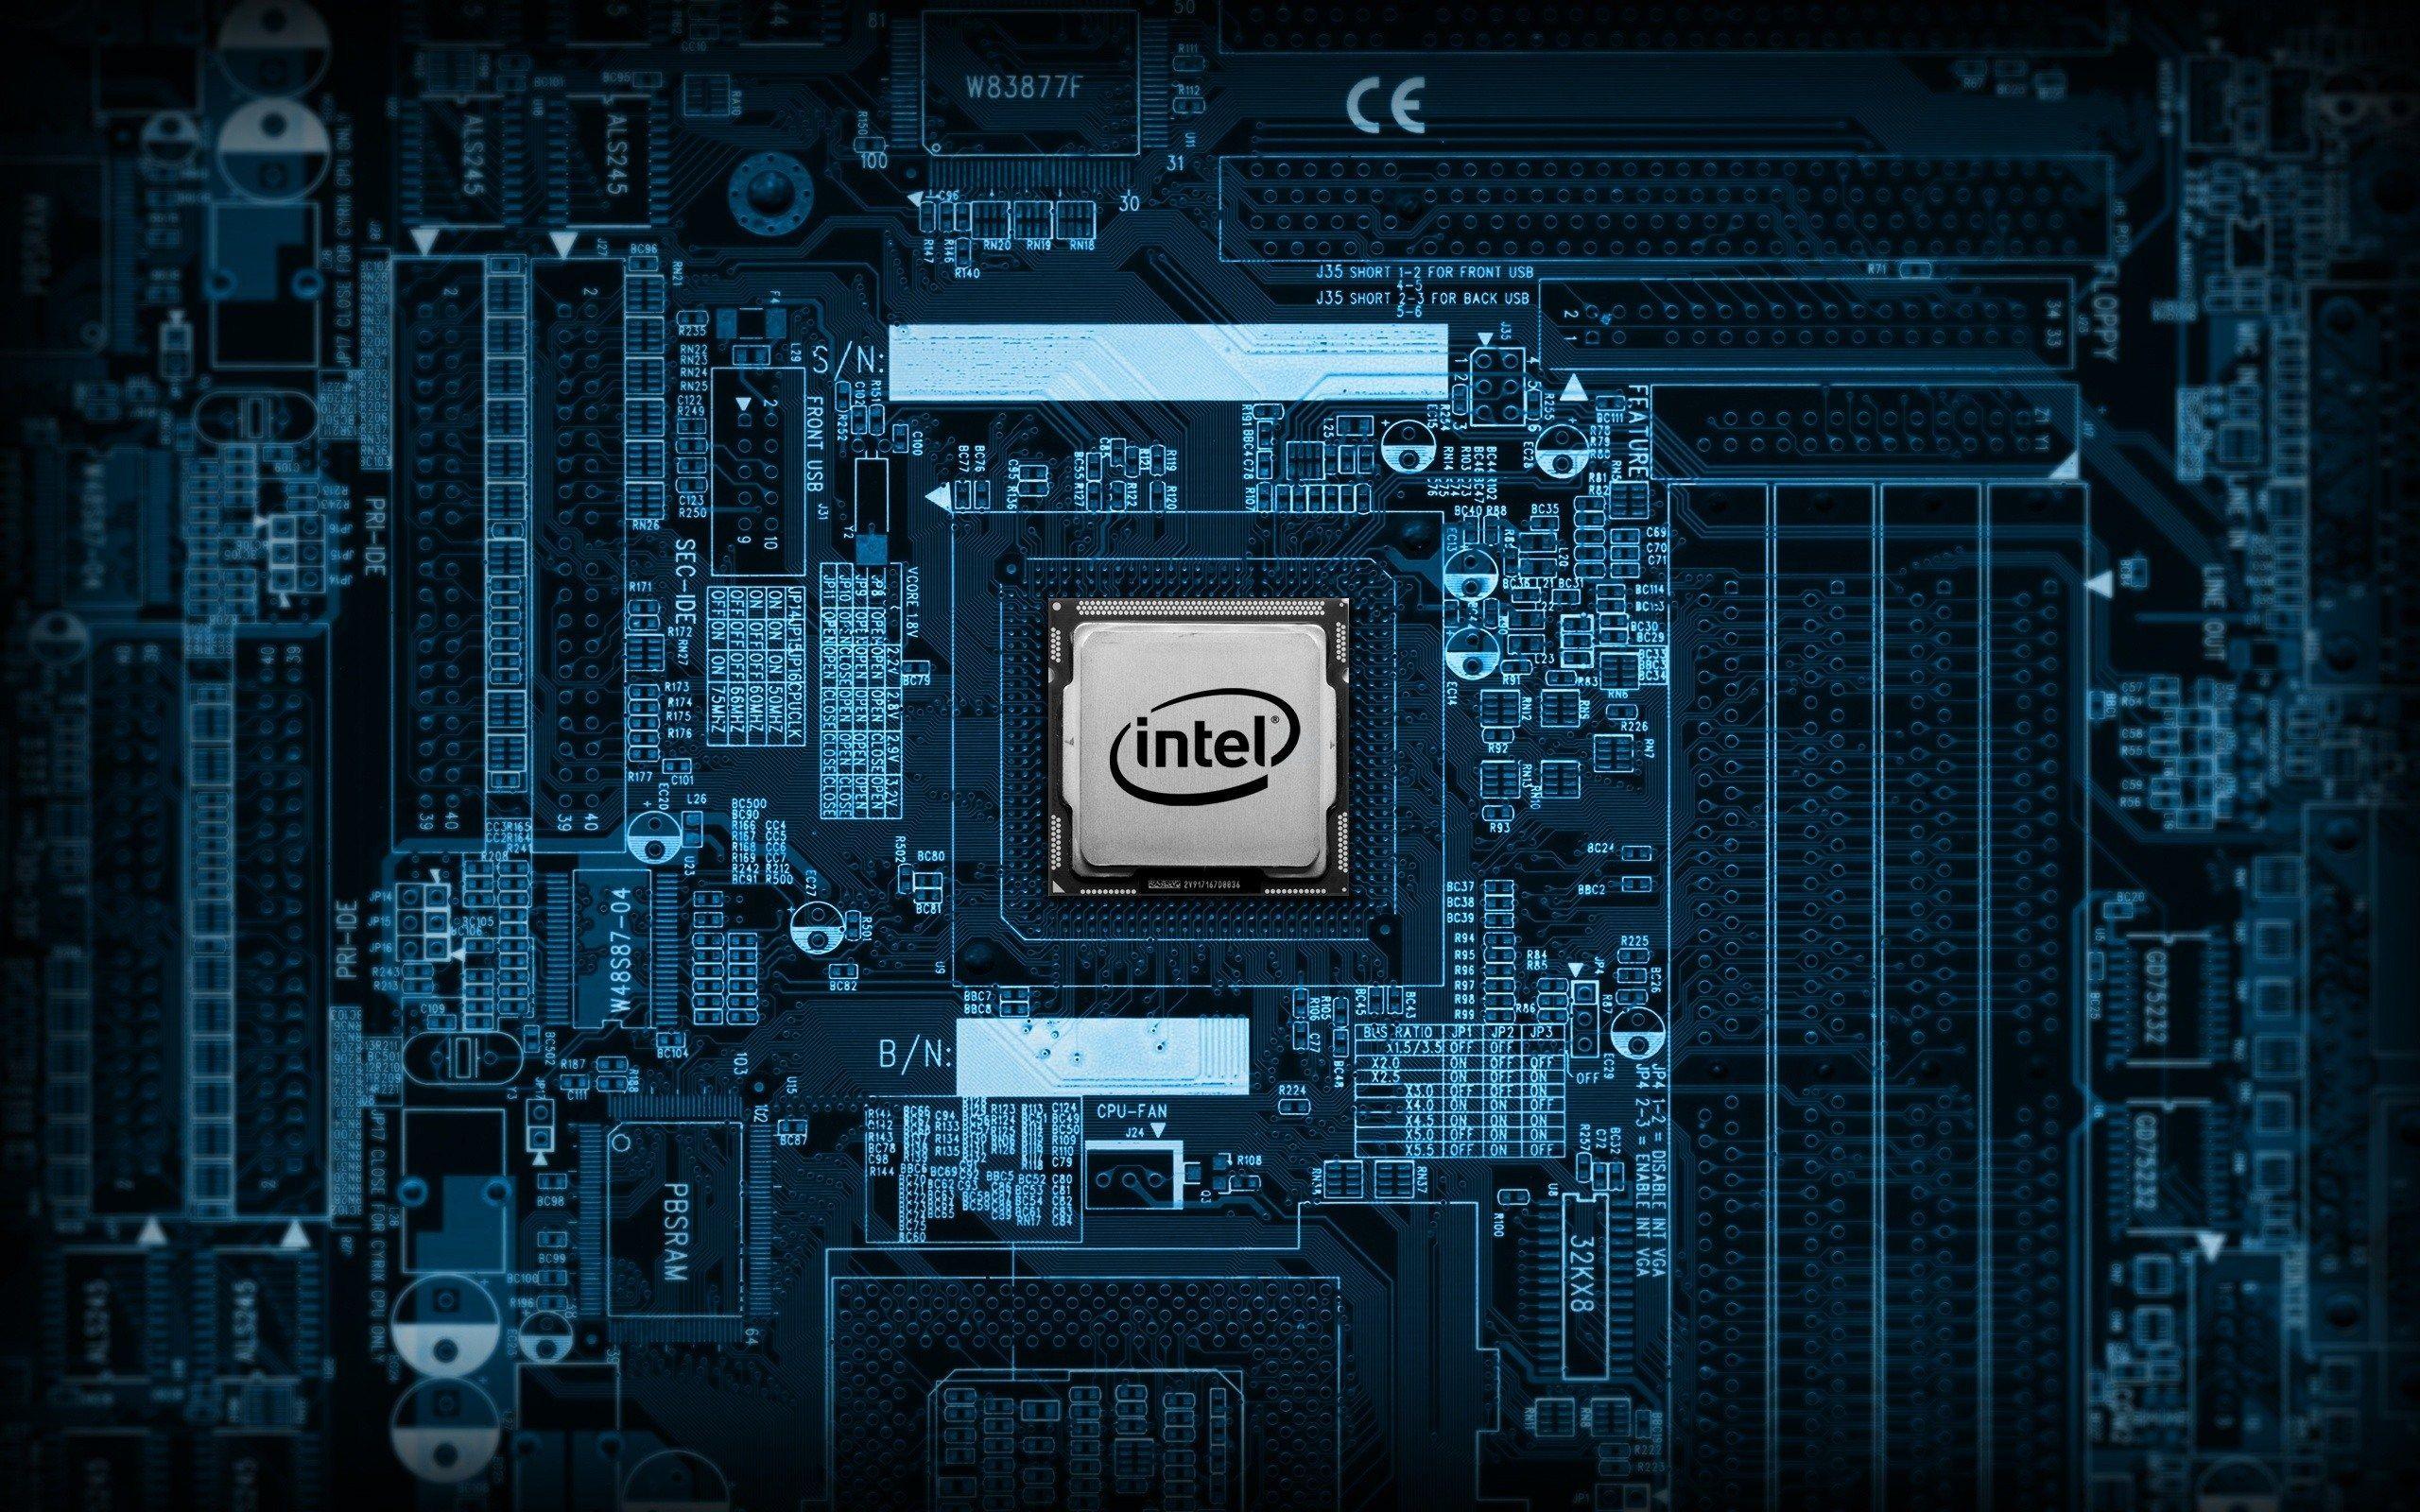 Intel CPU Wallpaper, Intel CPU Background, Intel CPU Free HD